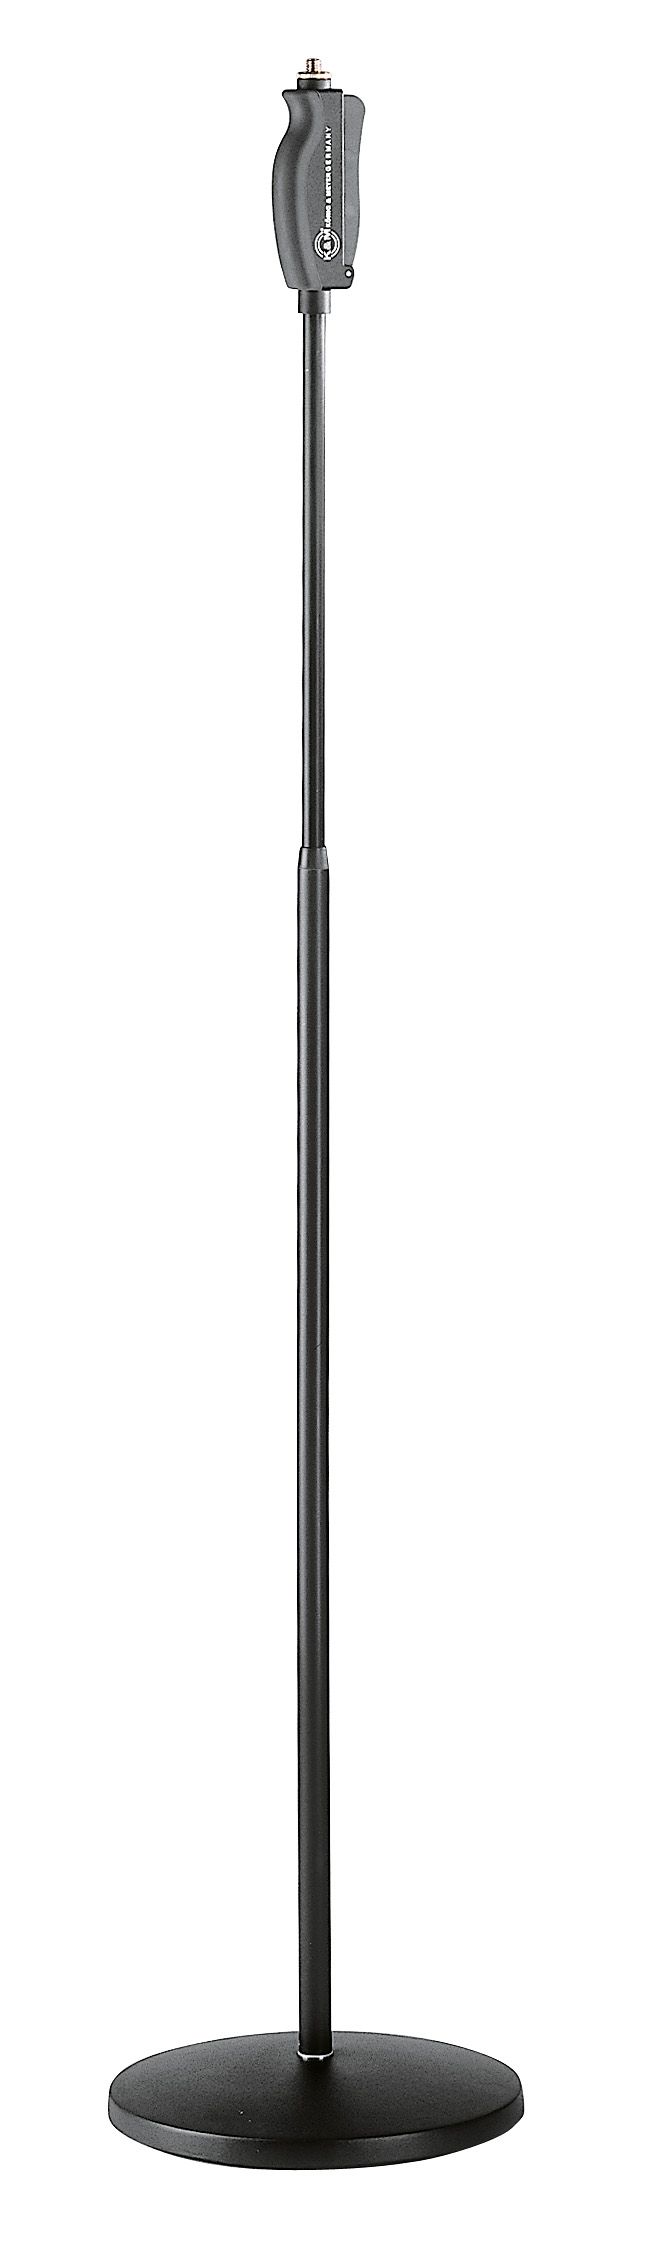 K&M 26085-300-55 - микрофонная стойка прямая с круглым основанием, чёрная, 1060-1790 мм